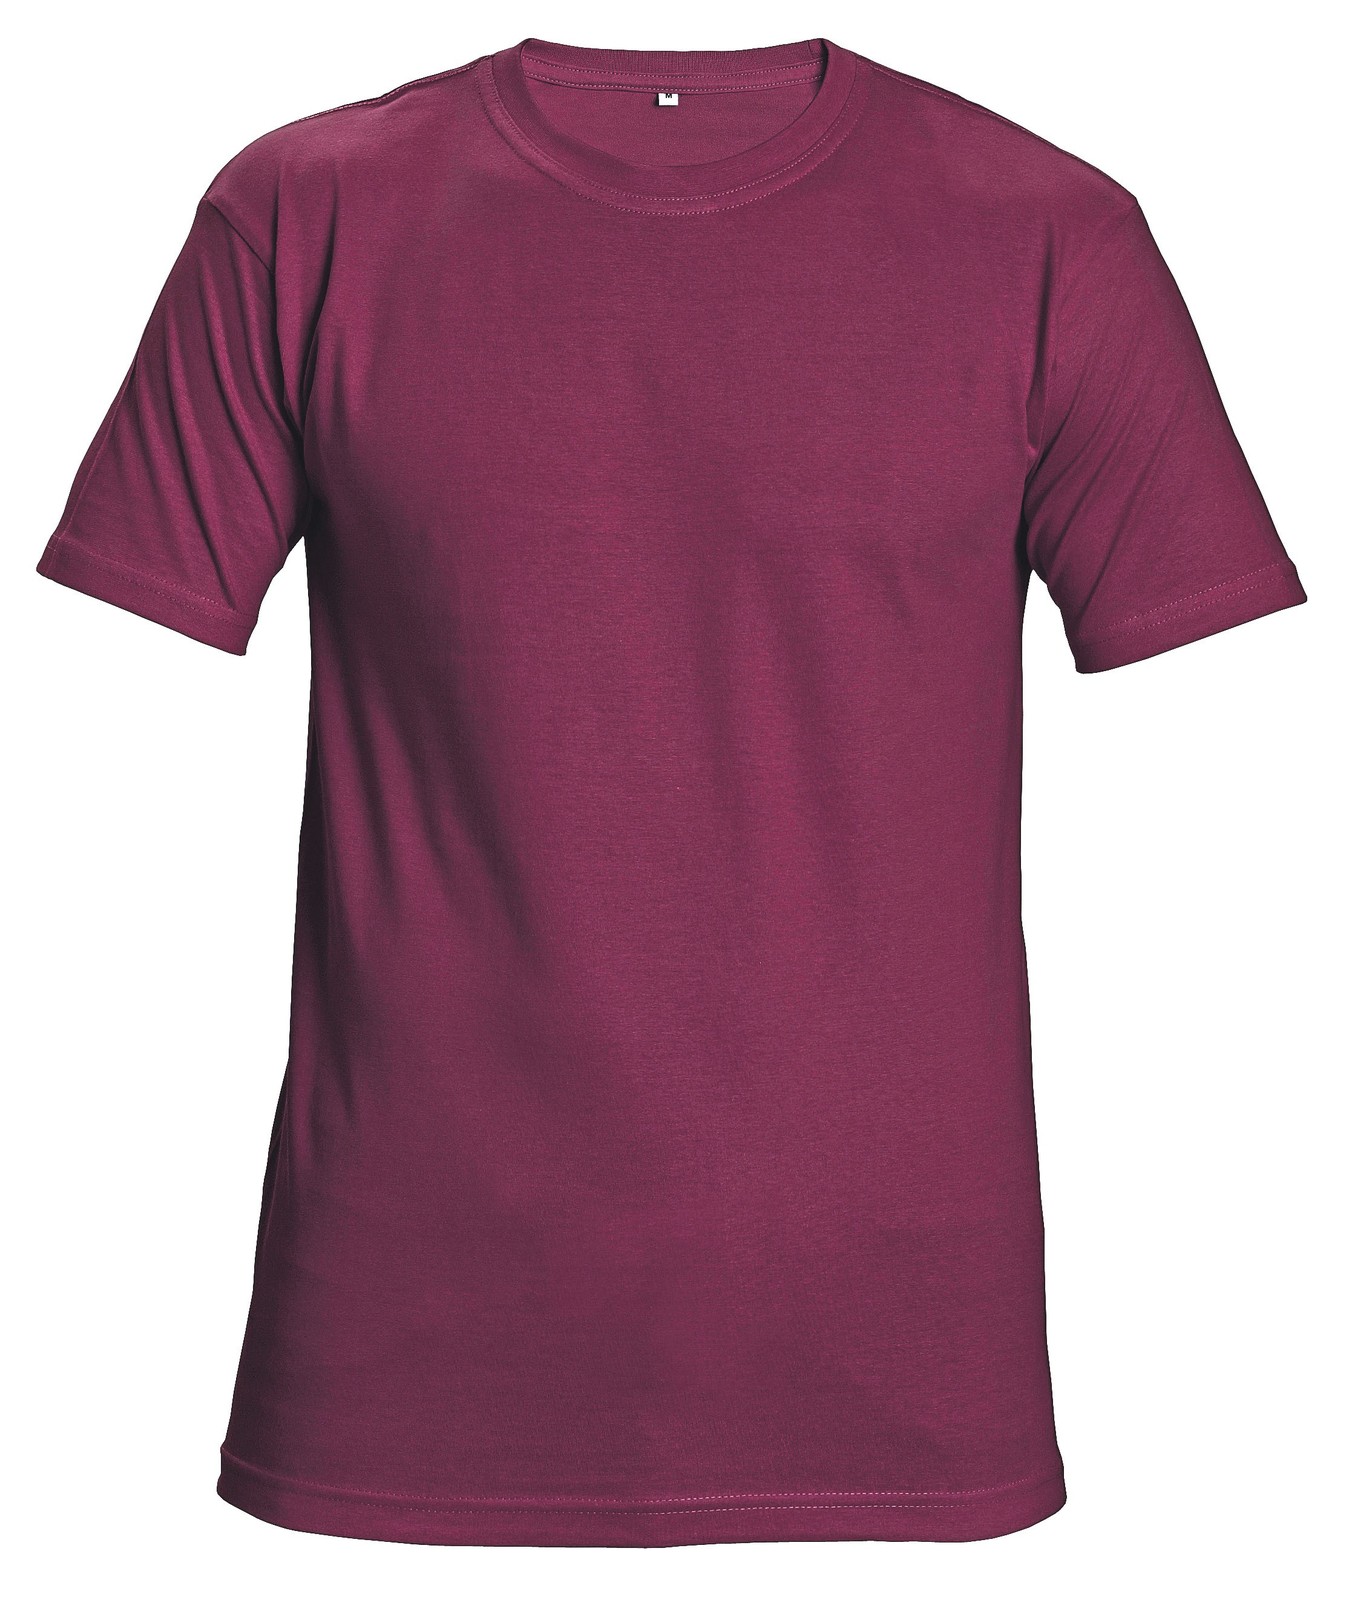 Tričko s krátkym rukávom Teesta unisex - veľkosť: XL, farba: bordová